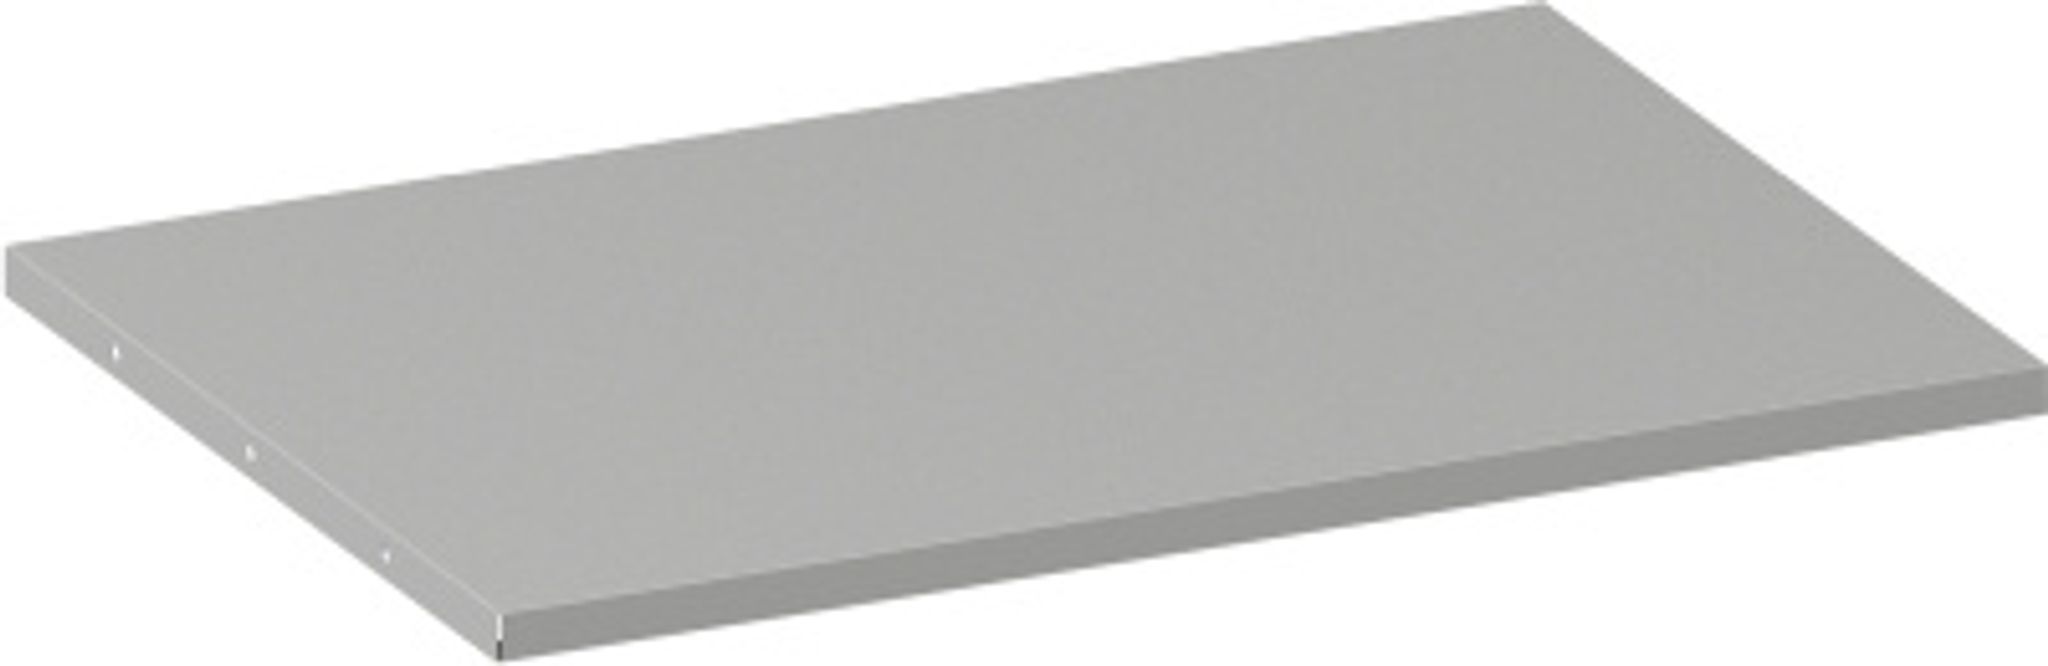 Přídavná police ke kovovým skříním, 800 x 600 mm, šedá, 1 ks